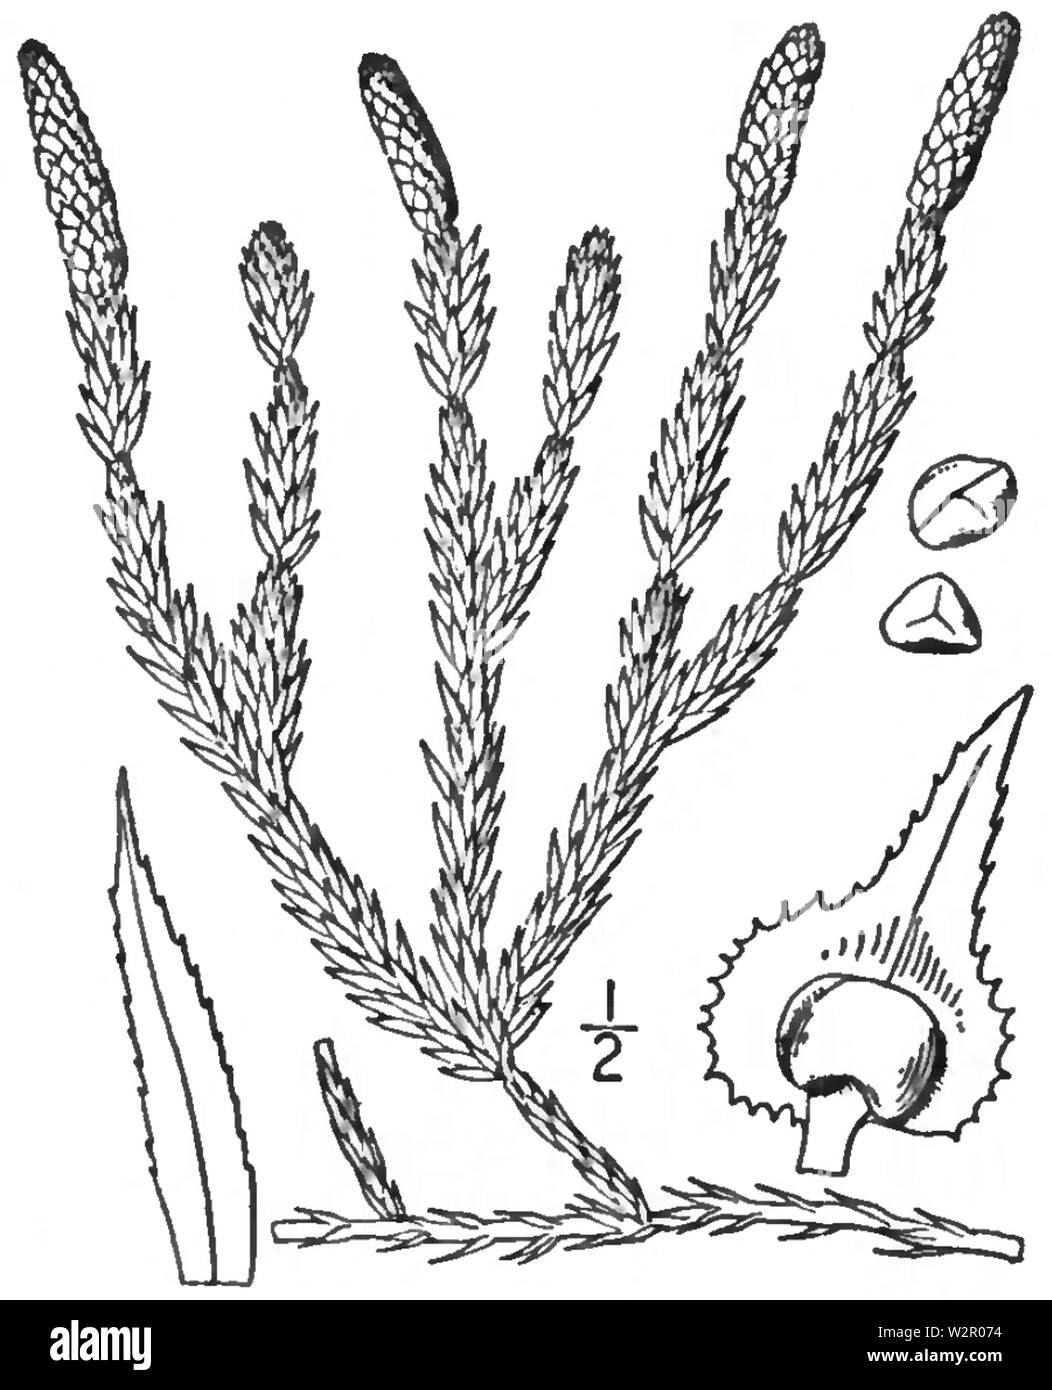 Спороносные побеги плауна. Плаун годичный (Lycopodium annotinum). Плаун Баранец строение. Плаун булавовидный. : Кладофора, плаун булавовидный, орляк обыкновенный.